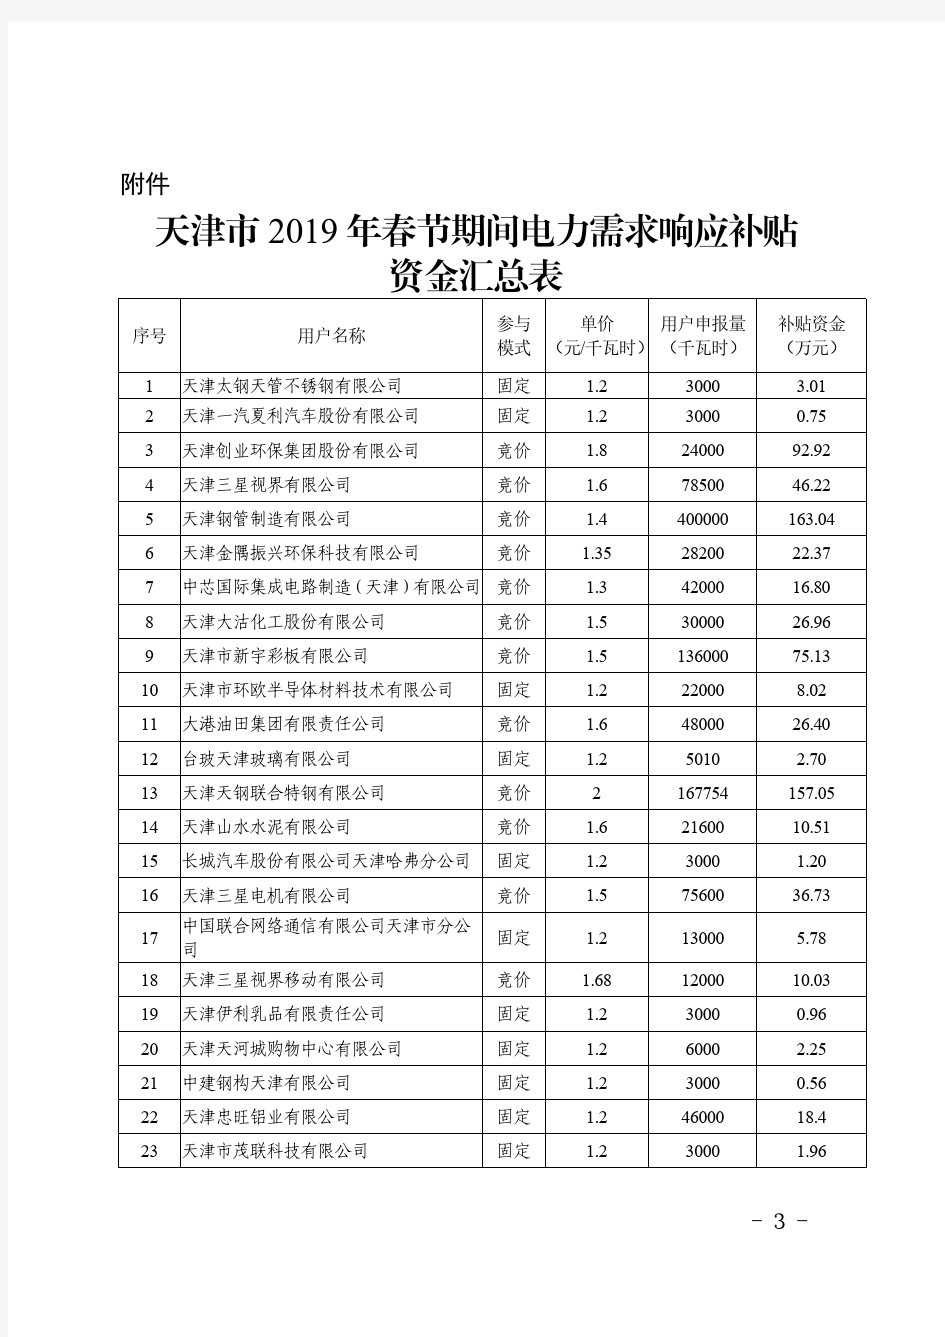 天津市2019年春节期间电力需求响应补贴资金汇总表